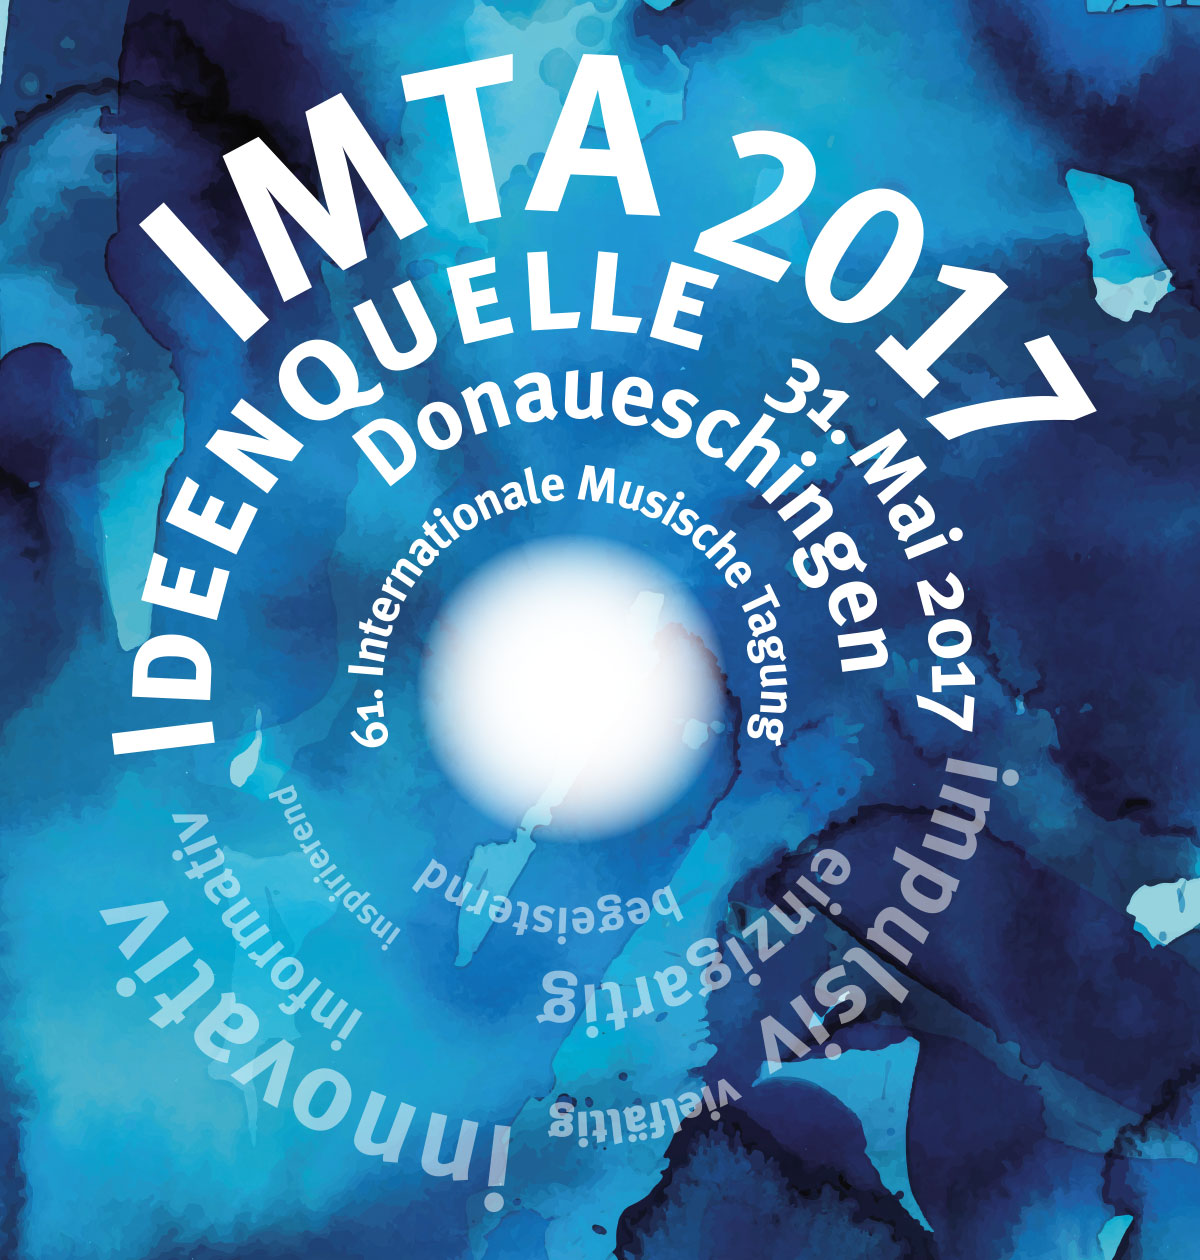 IMTA Logo